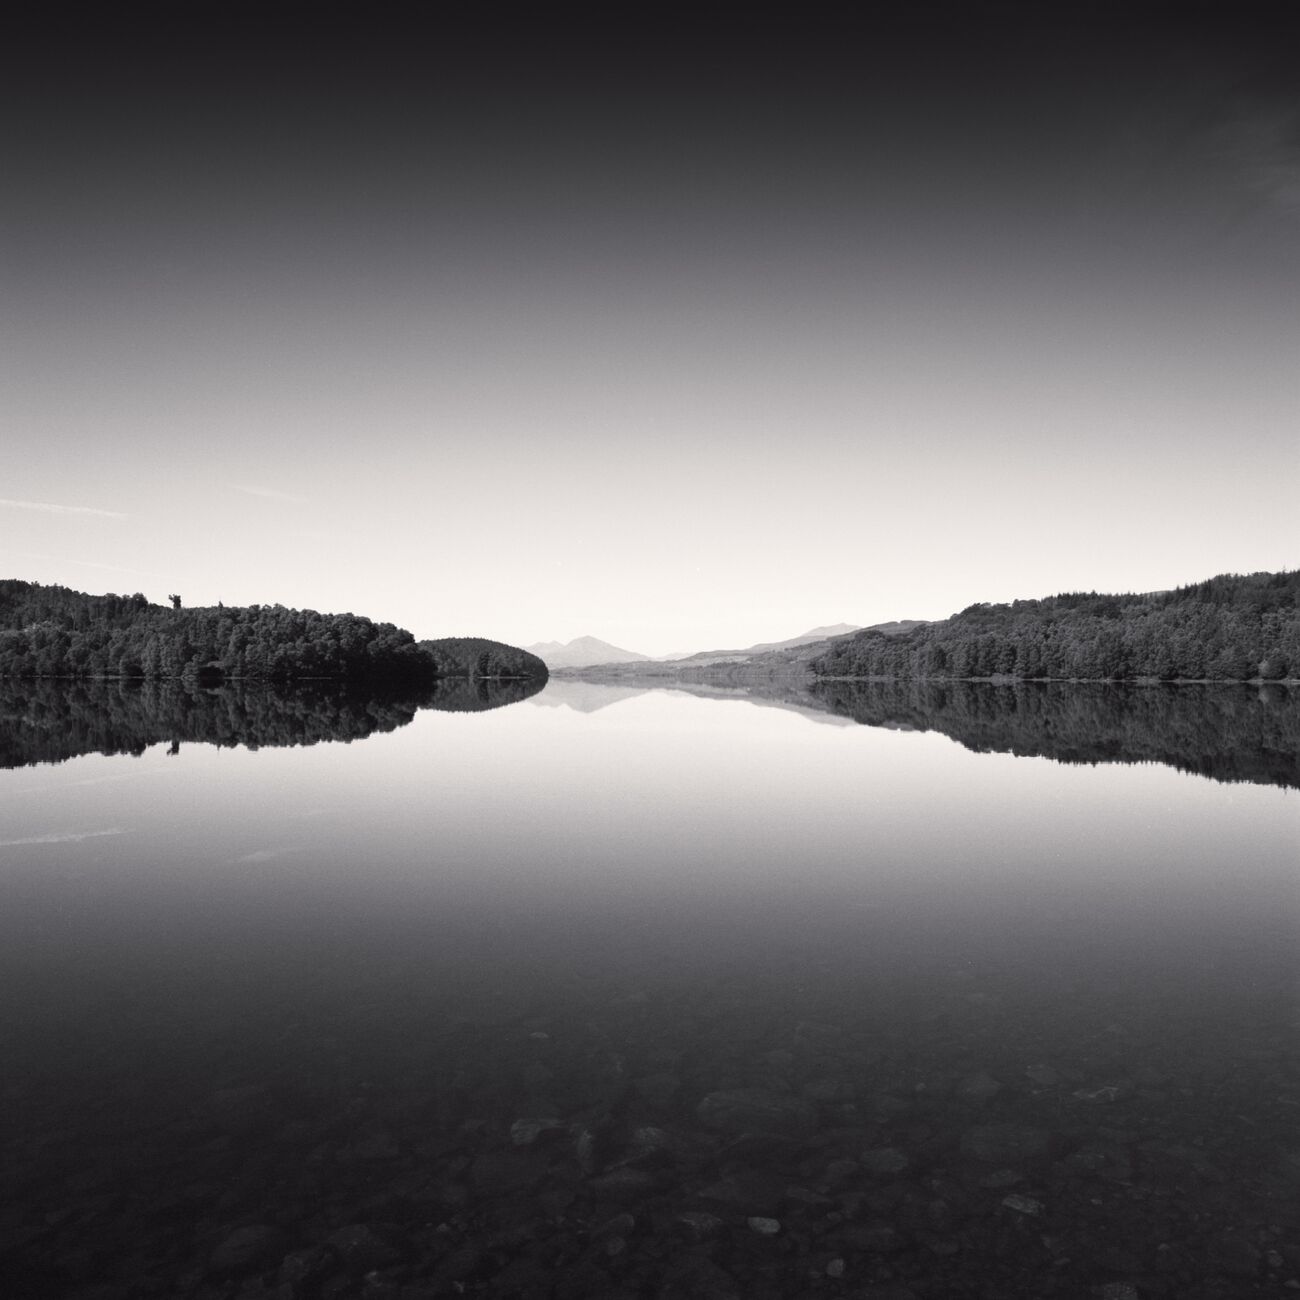 Water Mirror, Loch Garry, Scotland. August 2022. Ref-11579 - Denis Olivier Photography